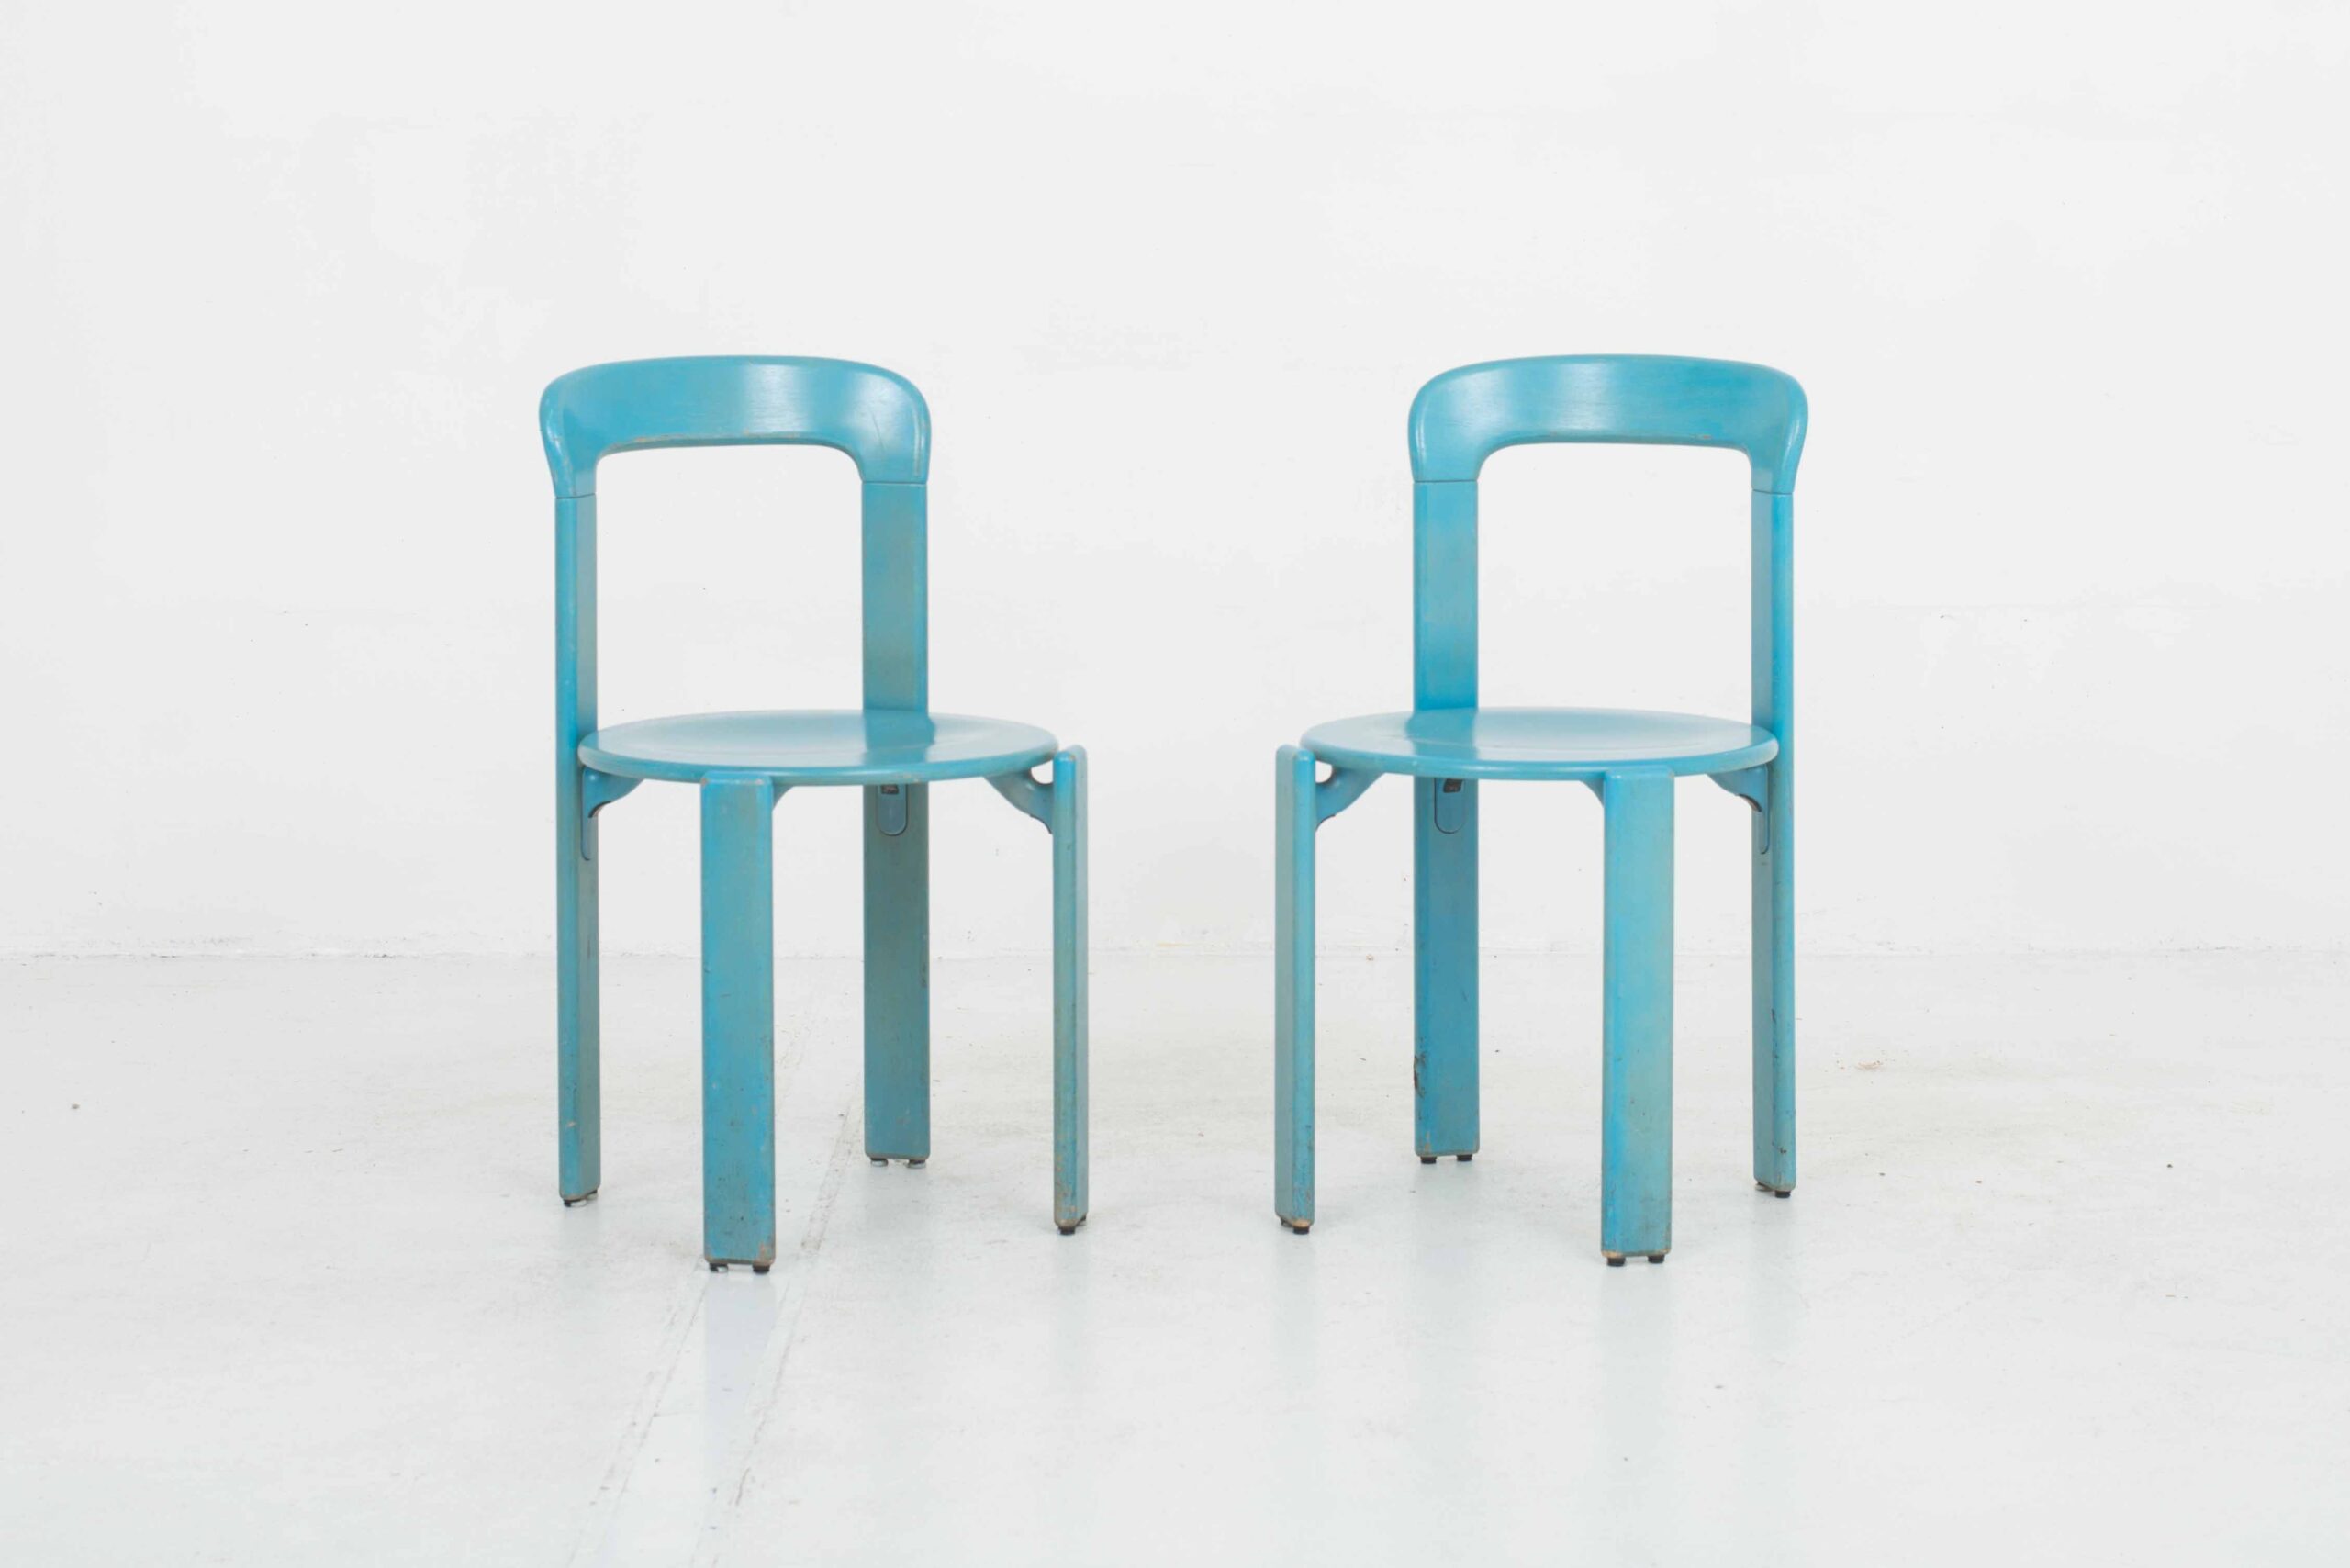 Bruno Rey Stühle &#8222;Typ 3300&#8220; von Dietiker im Zweierset &#8211; Blau-0